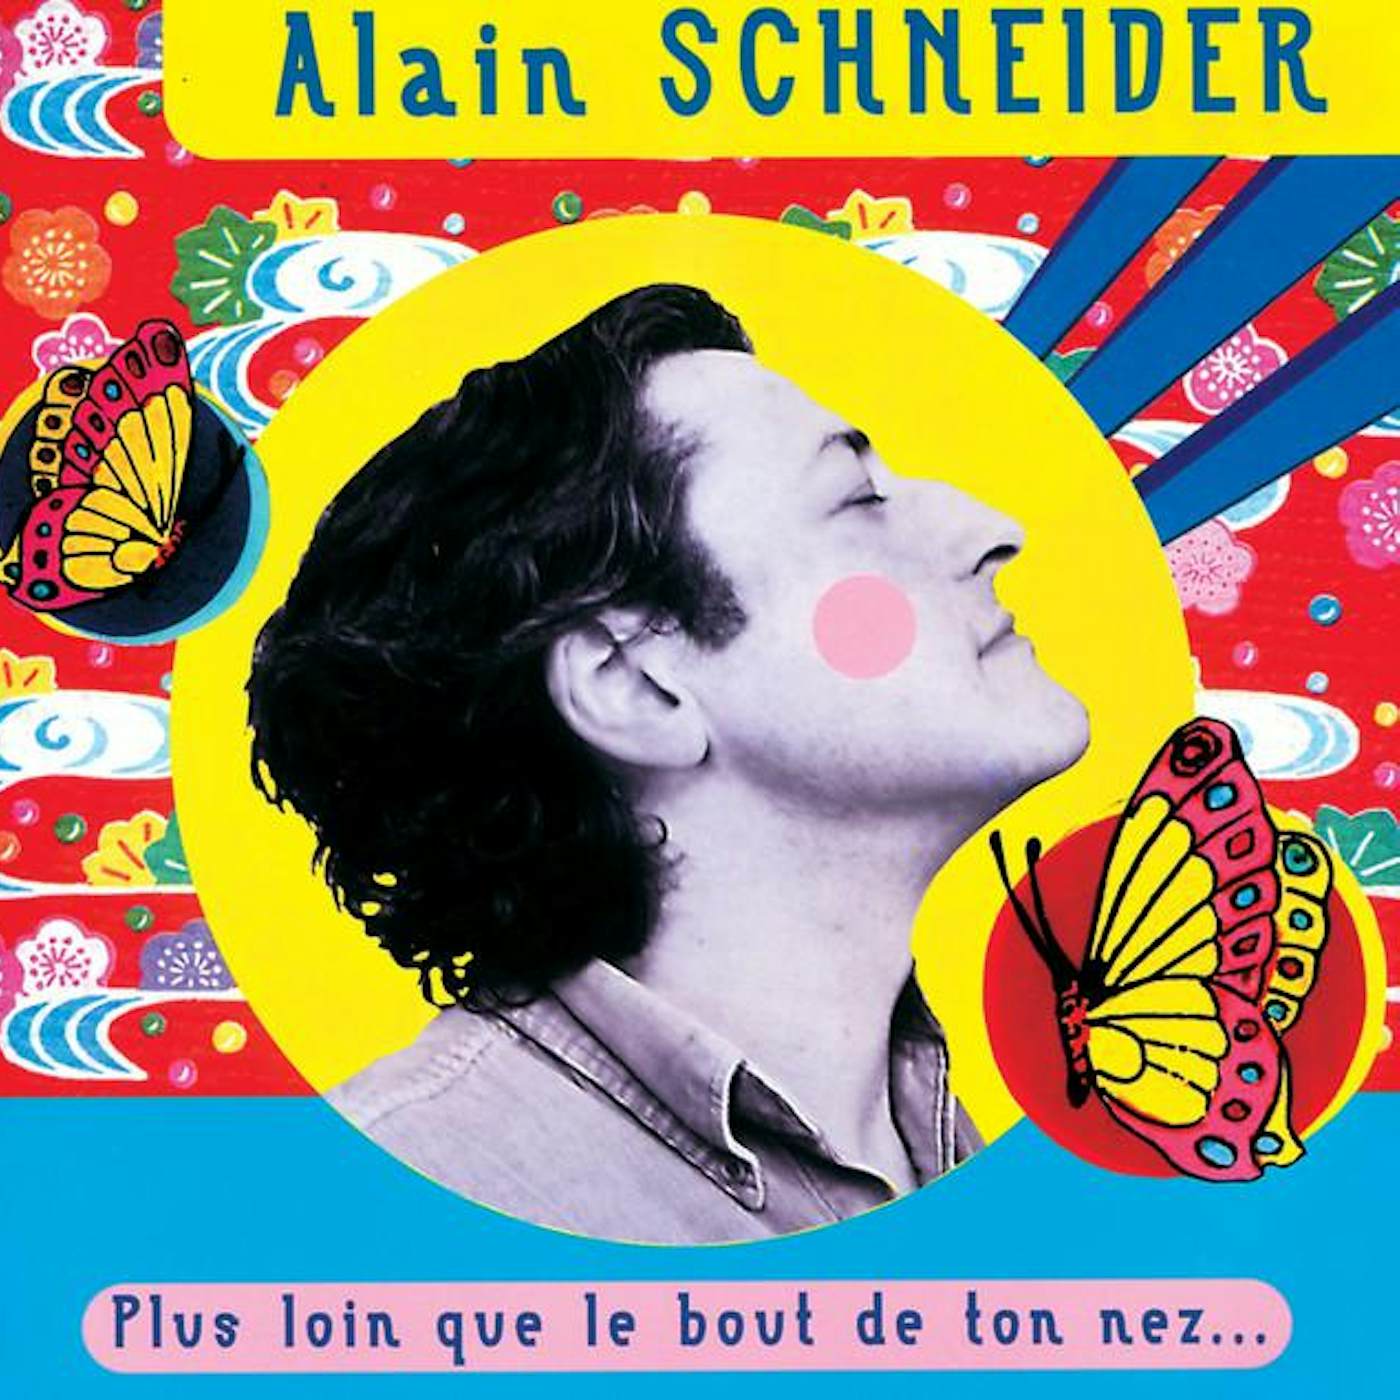 Alain Schneider